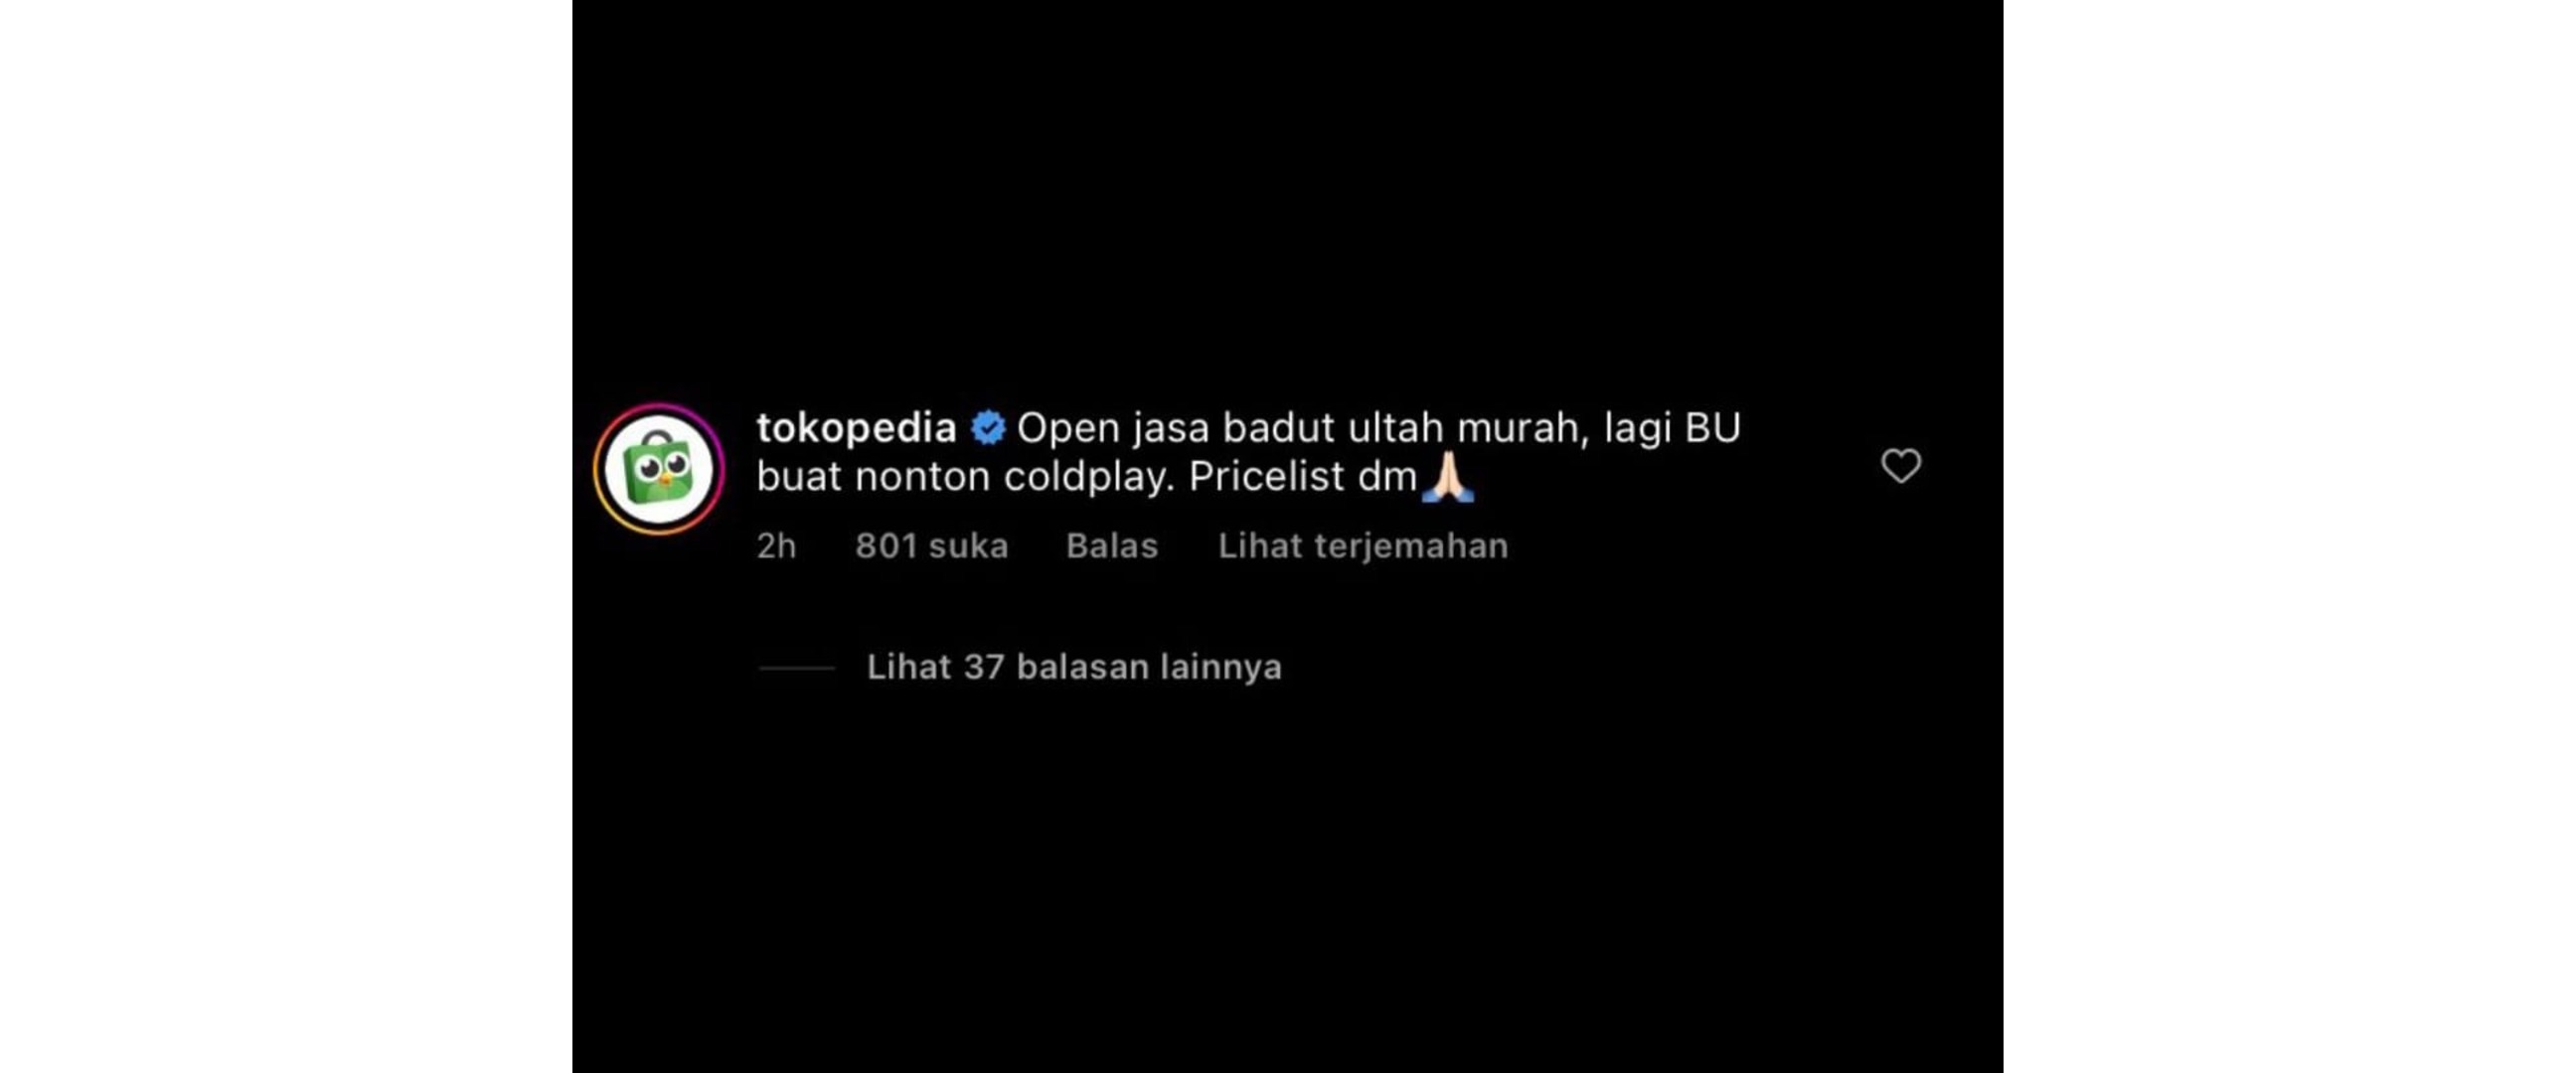 11 Potret kocak komentar warganet menjelang konser Coldplay di Indonesia ini ngakak abis, uangnya mana